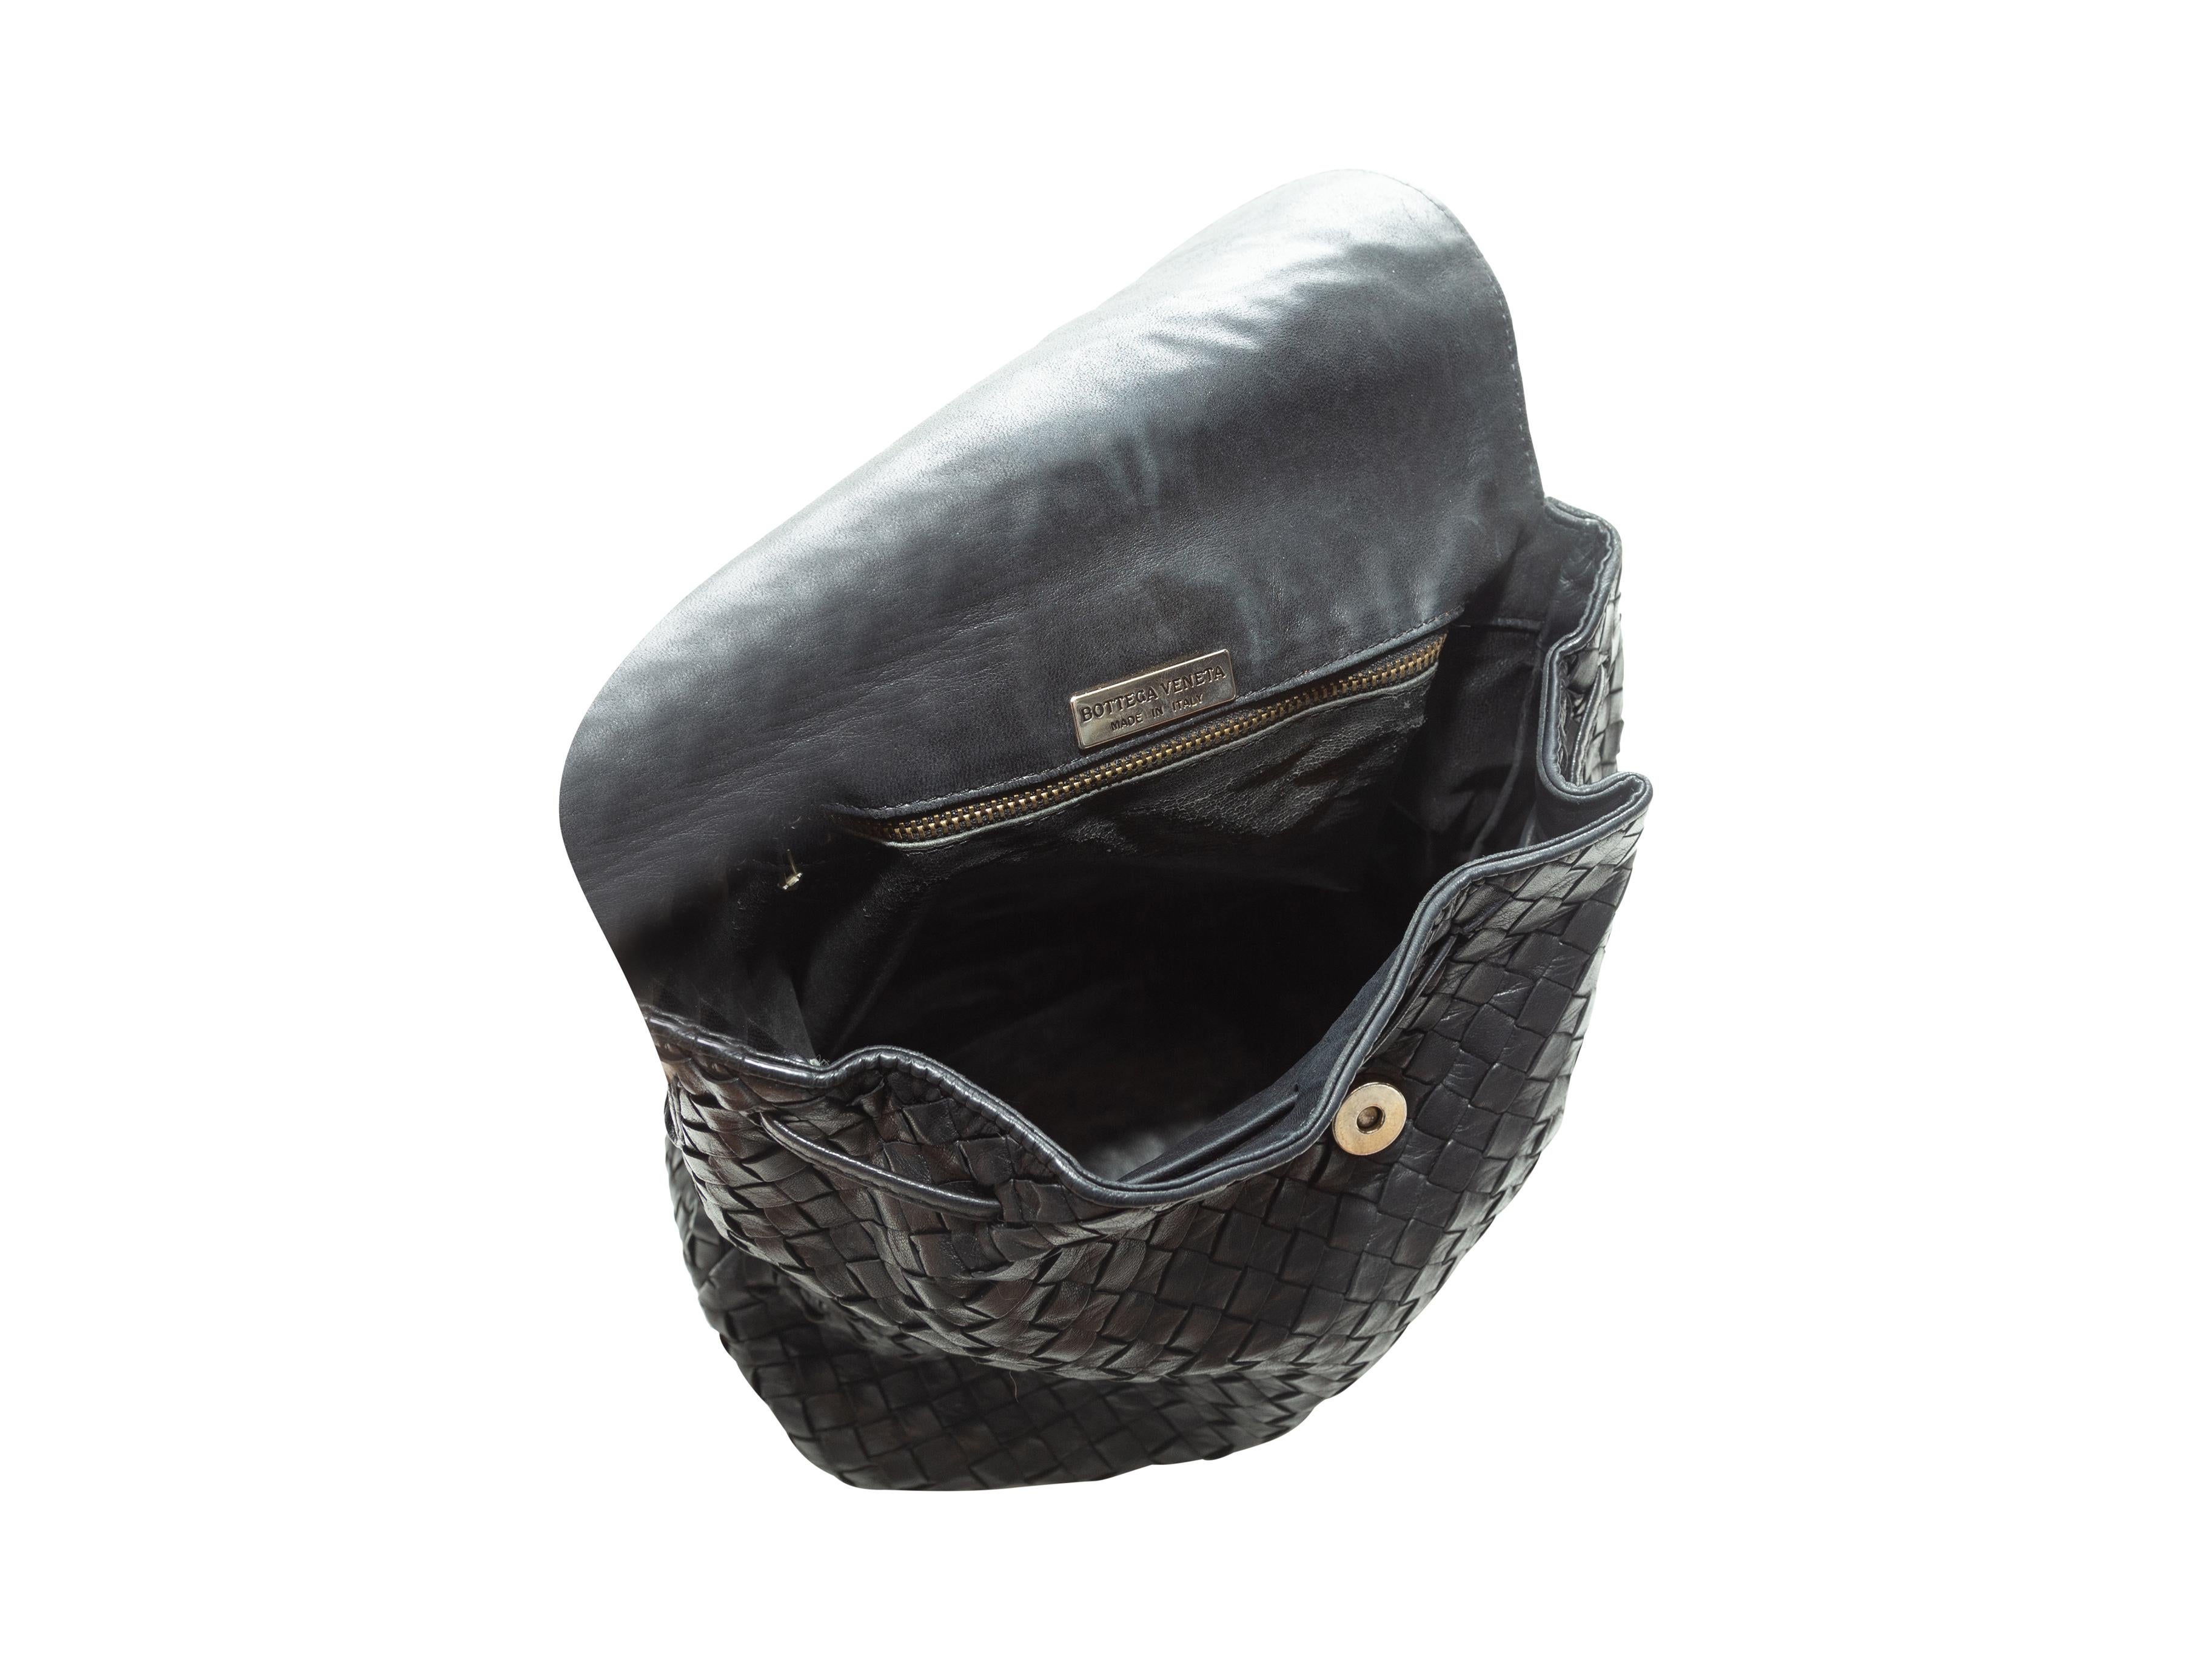 Product Details: Black Intrecciato leather shoulder bag by Bottega Veneta. Interior zip pocket. Knotted shoulder strap. Tassel-accented magnetic closure at front flap. 12